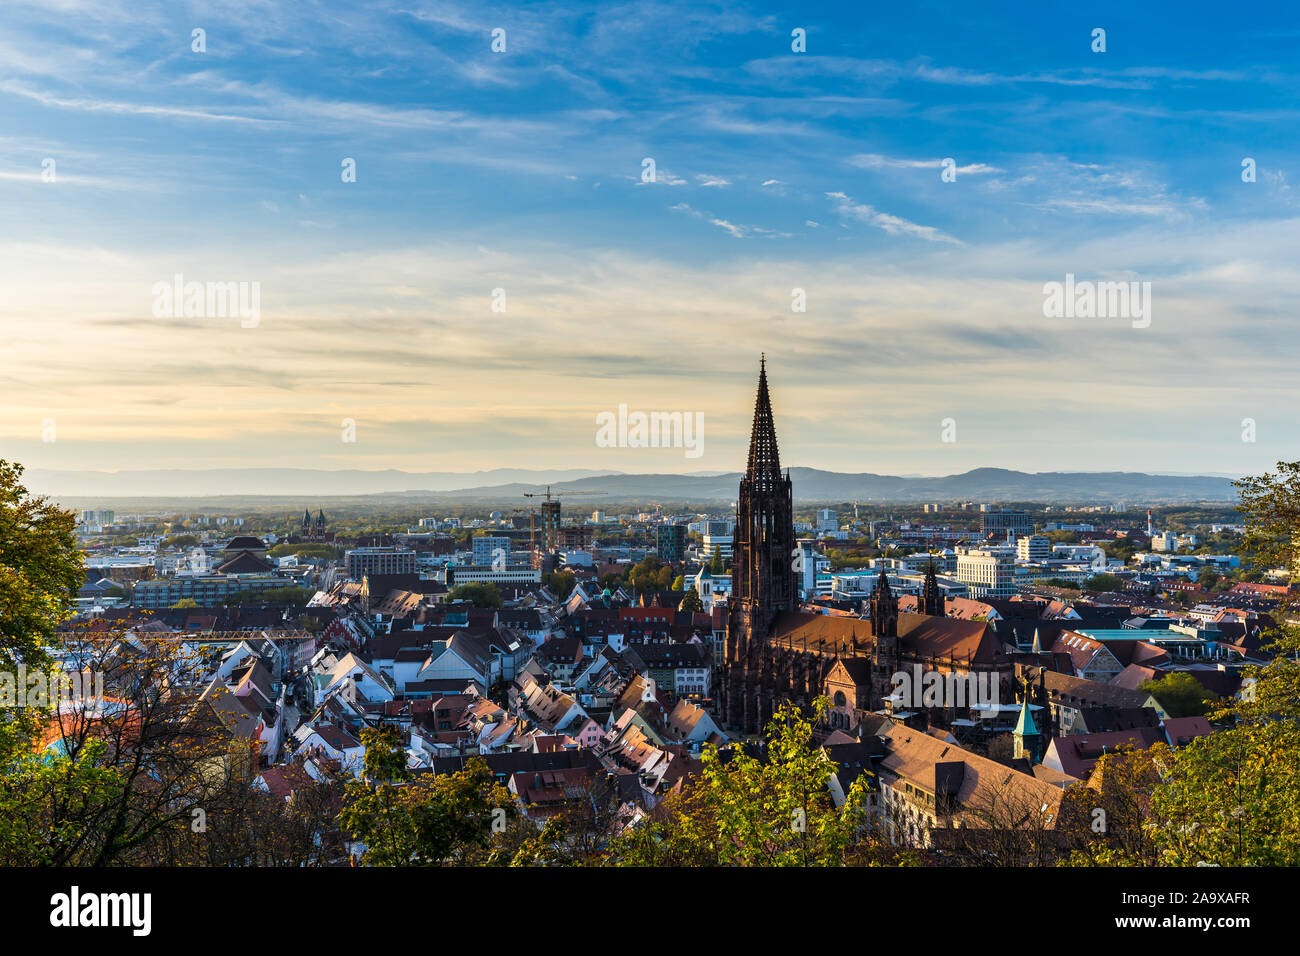 Deutschland, Freiburg im Breisgau Skyline mit der berühmten Kathedrale Münster in der Altstadt in warmen Sonnenuntergang Sonne Licht im Herbst Jahreszeit, Luftaufnahme über cityscap Stockfoto